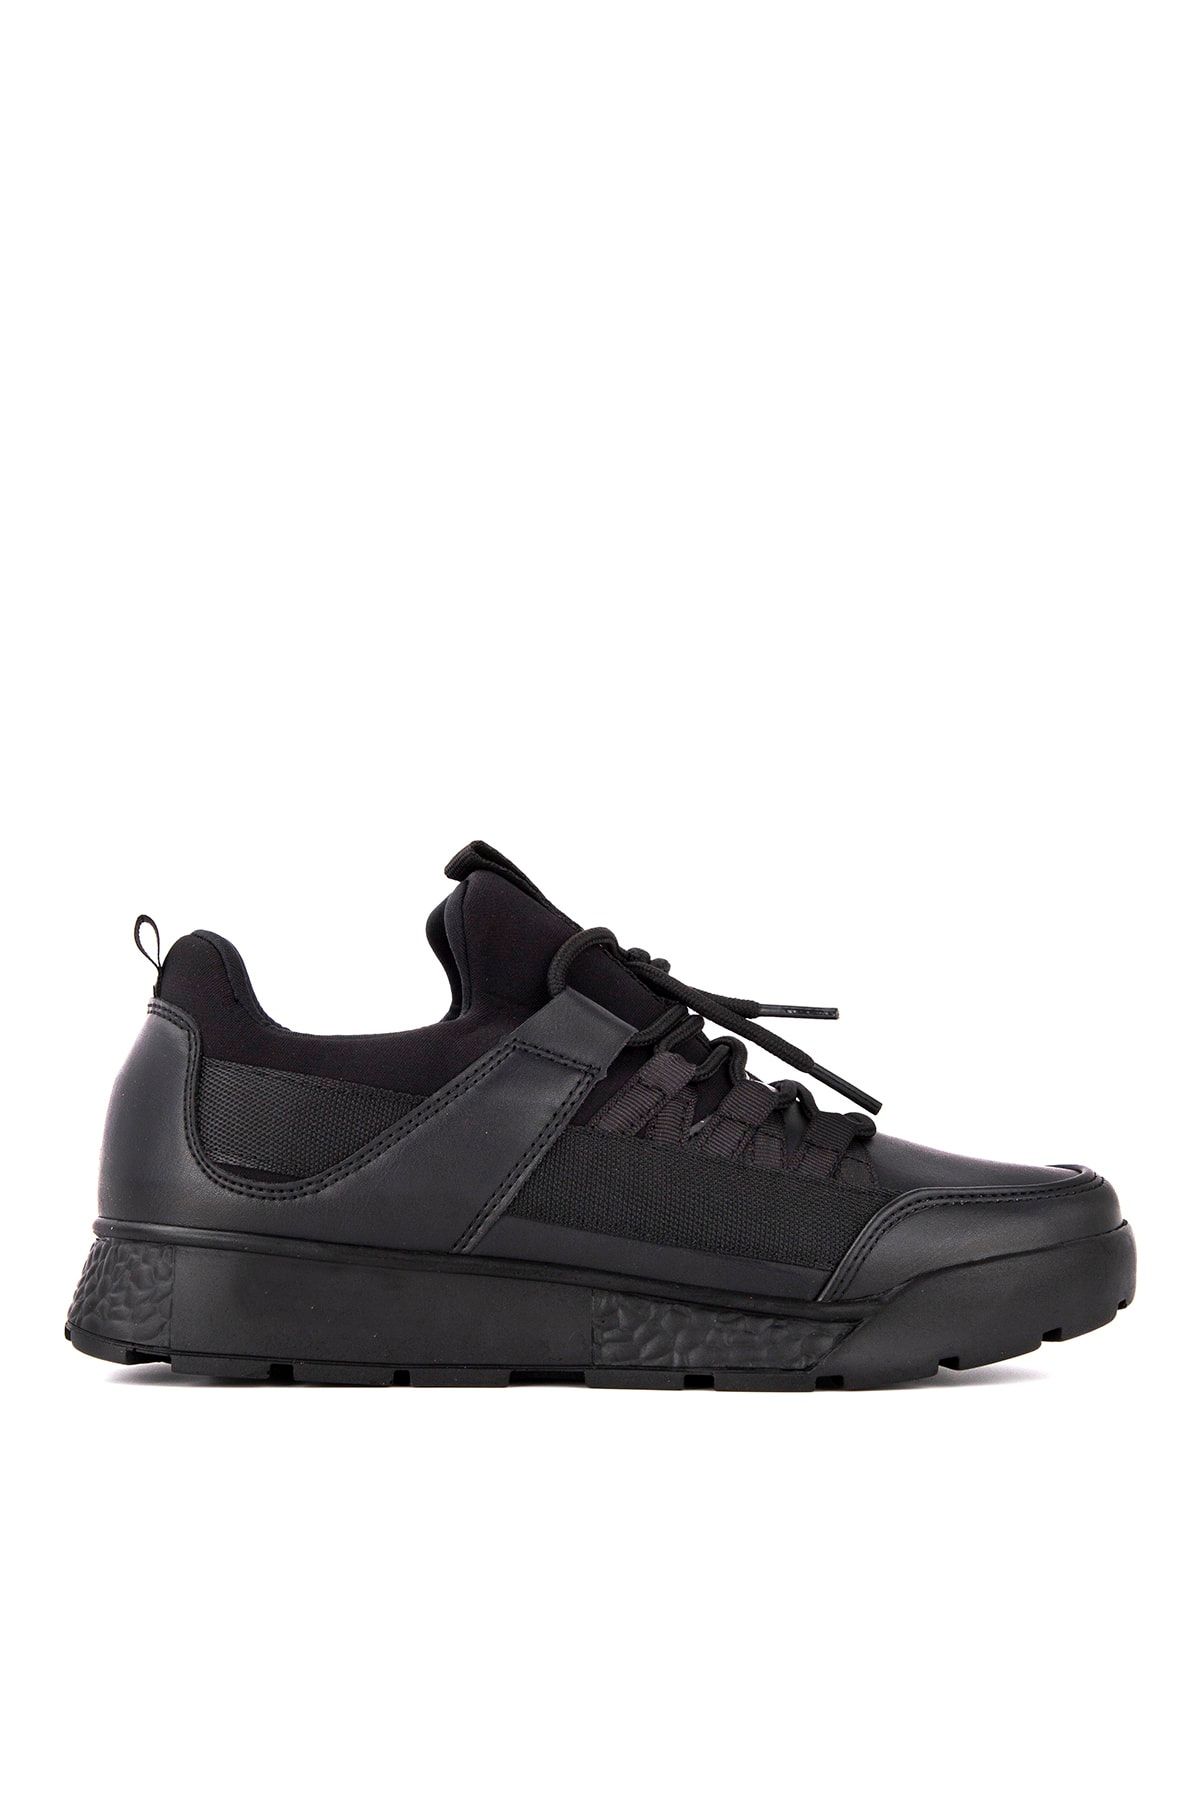 Slazenger Zeber Sneaker Kadın Ayakkabı Siyah / Siyah Sa20rk015